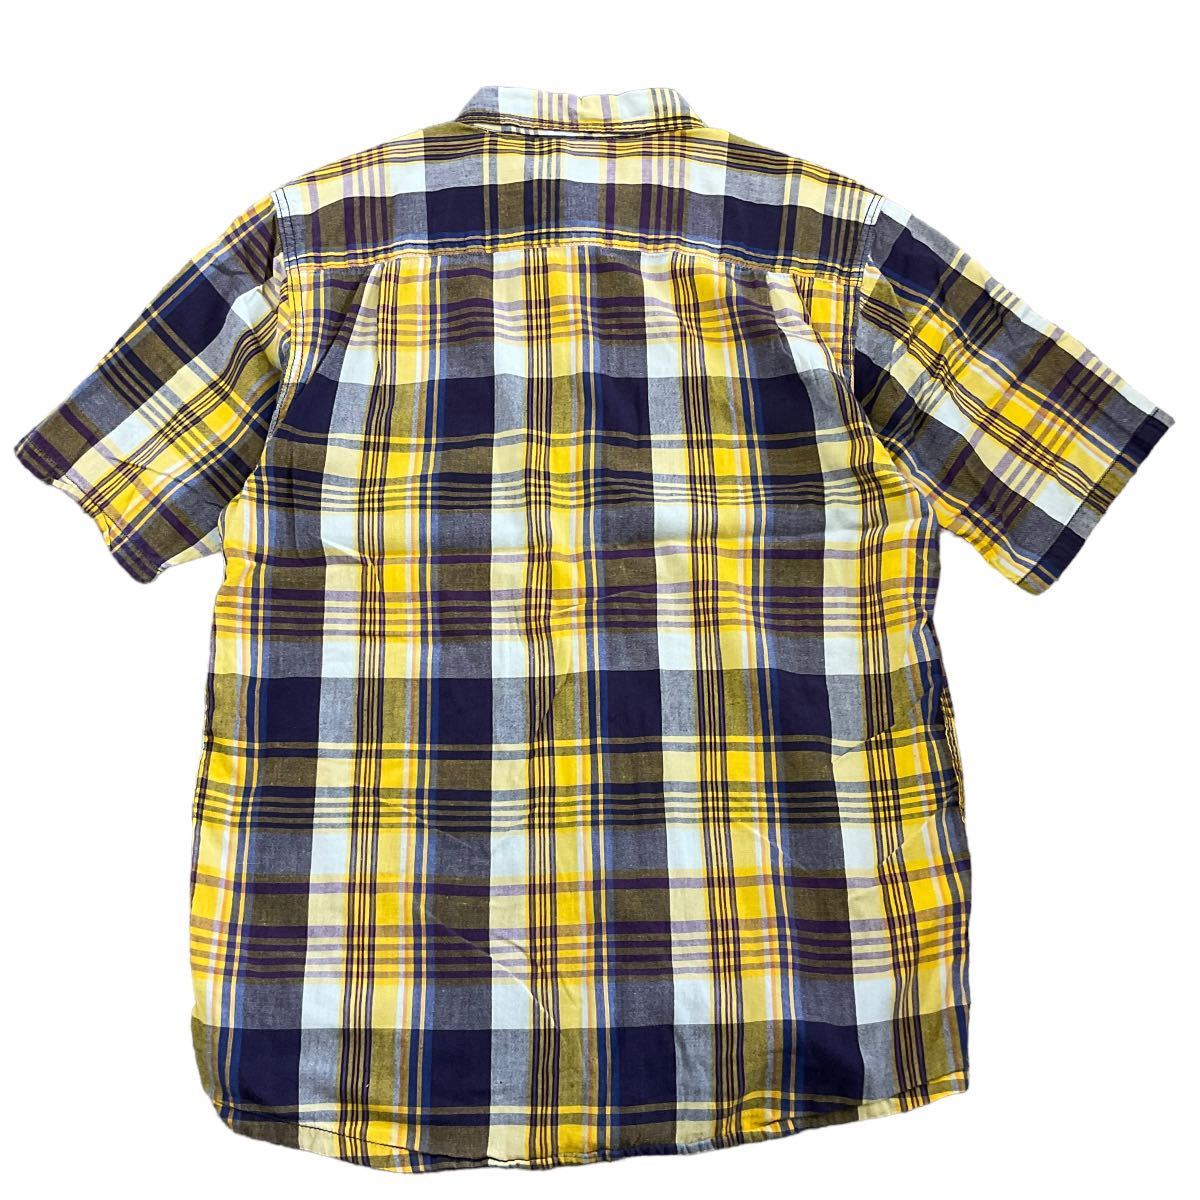 KAVU チェック柄 半袖 ボタンシャツ L イエロー×パープル チェック チェックシャツ シャツ アウトドア カブー_画像5